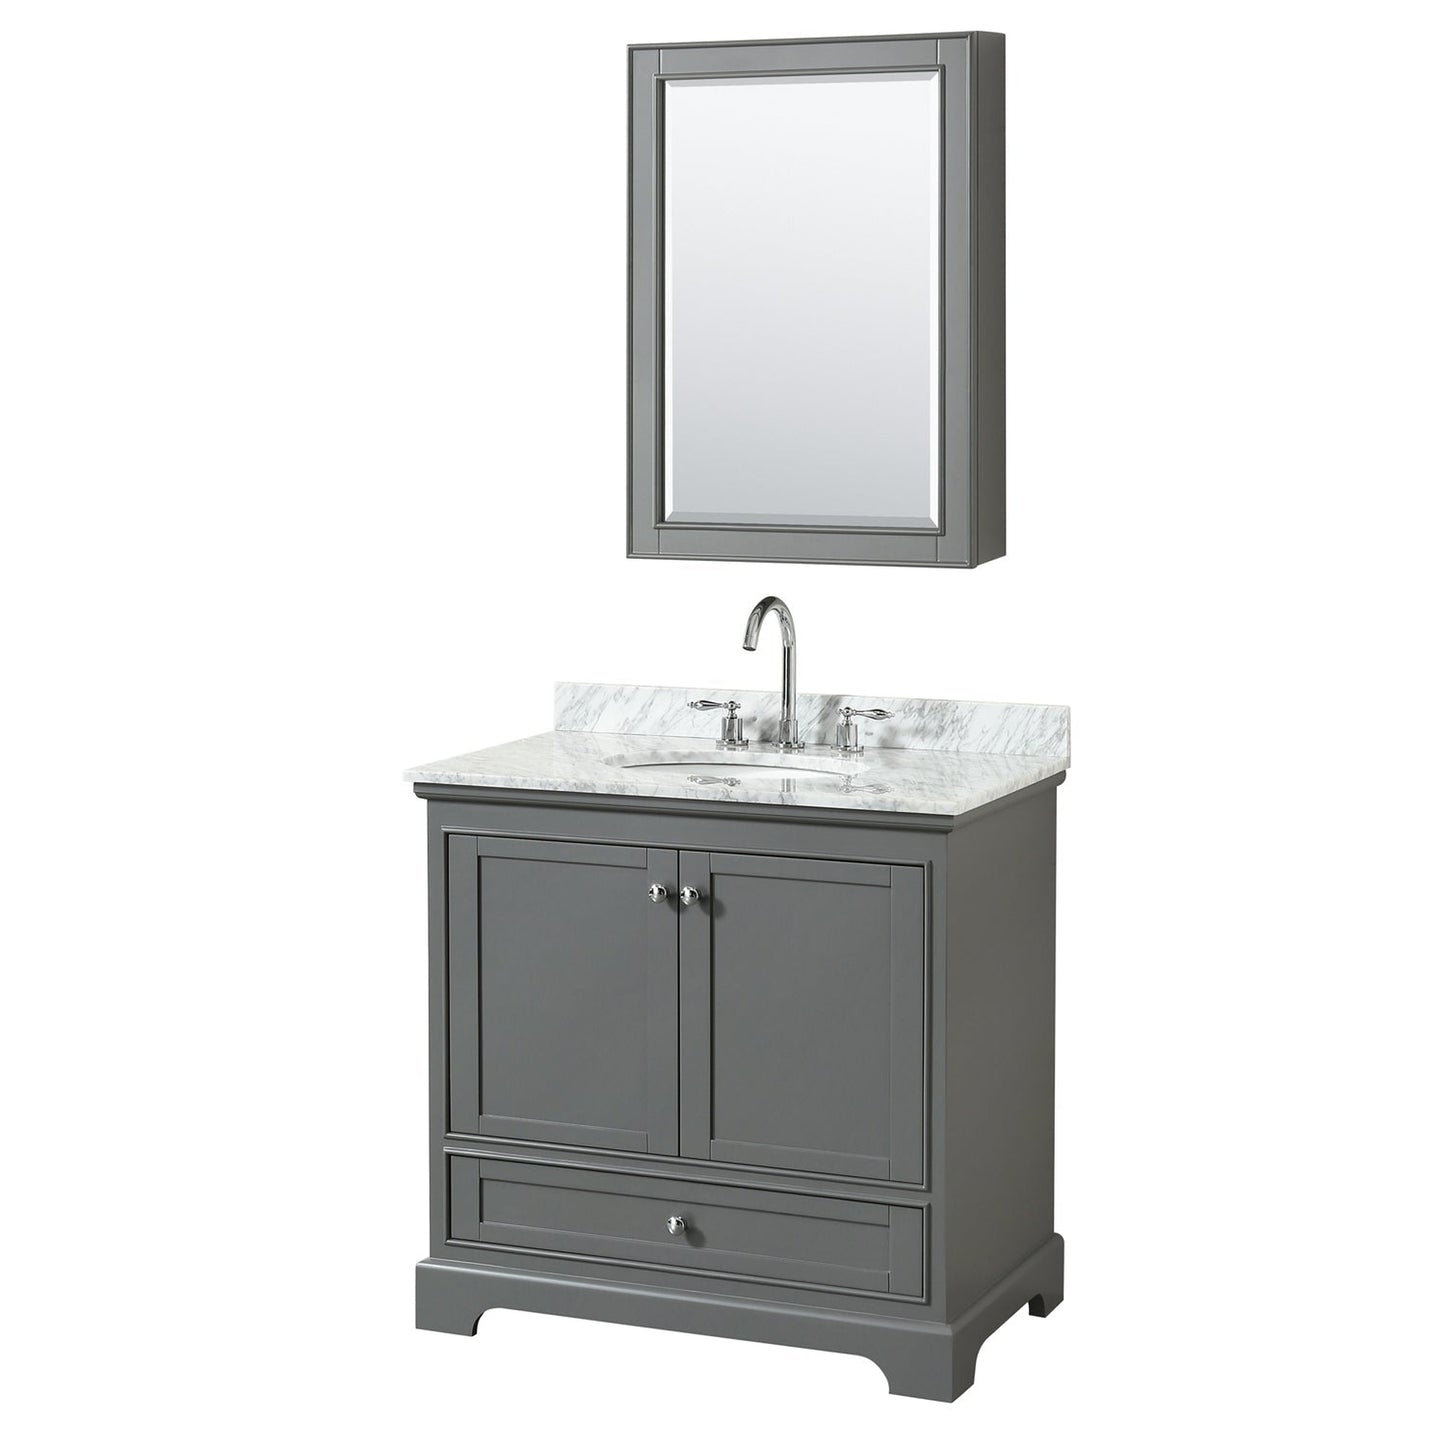 Wyndham Collection Deborah 36" Single Bathroom Vanity in Dark Gray, White Carrara Marble Countertop, Undermount Oval Sink, and Medicine Cabinet